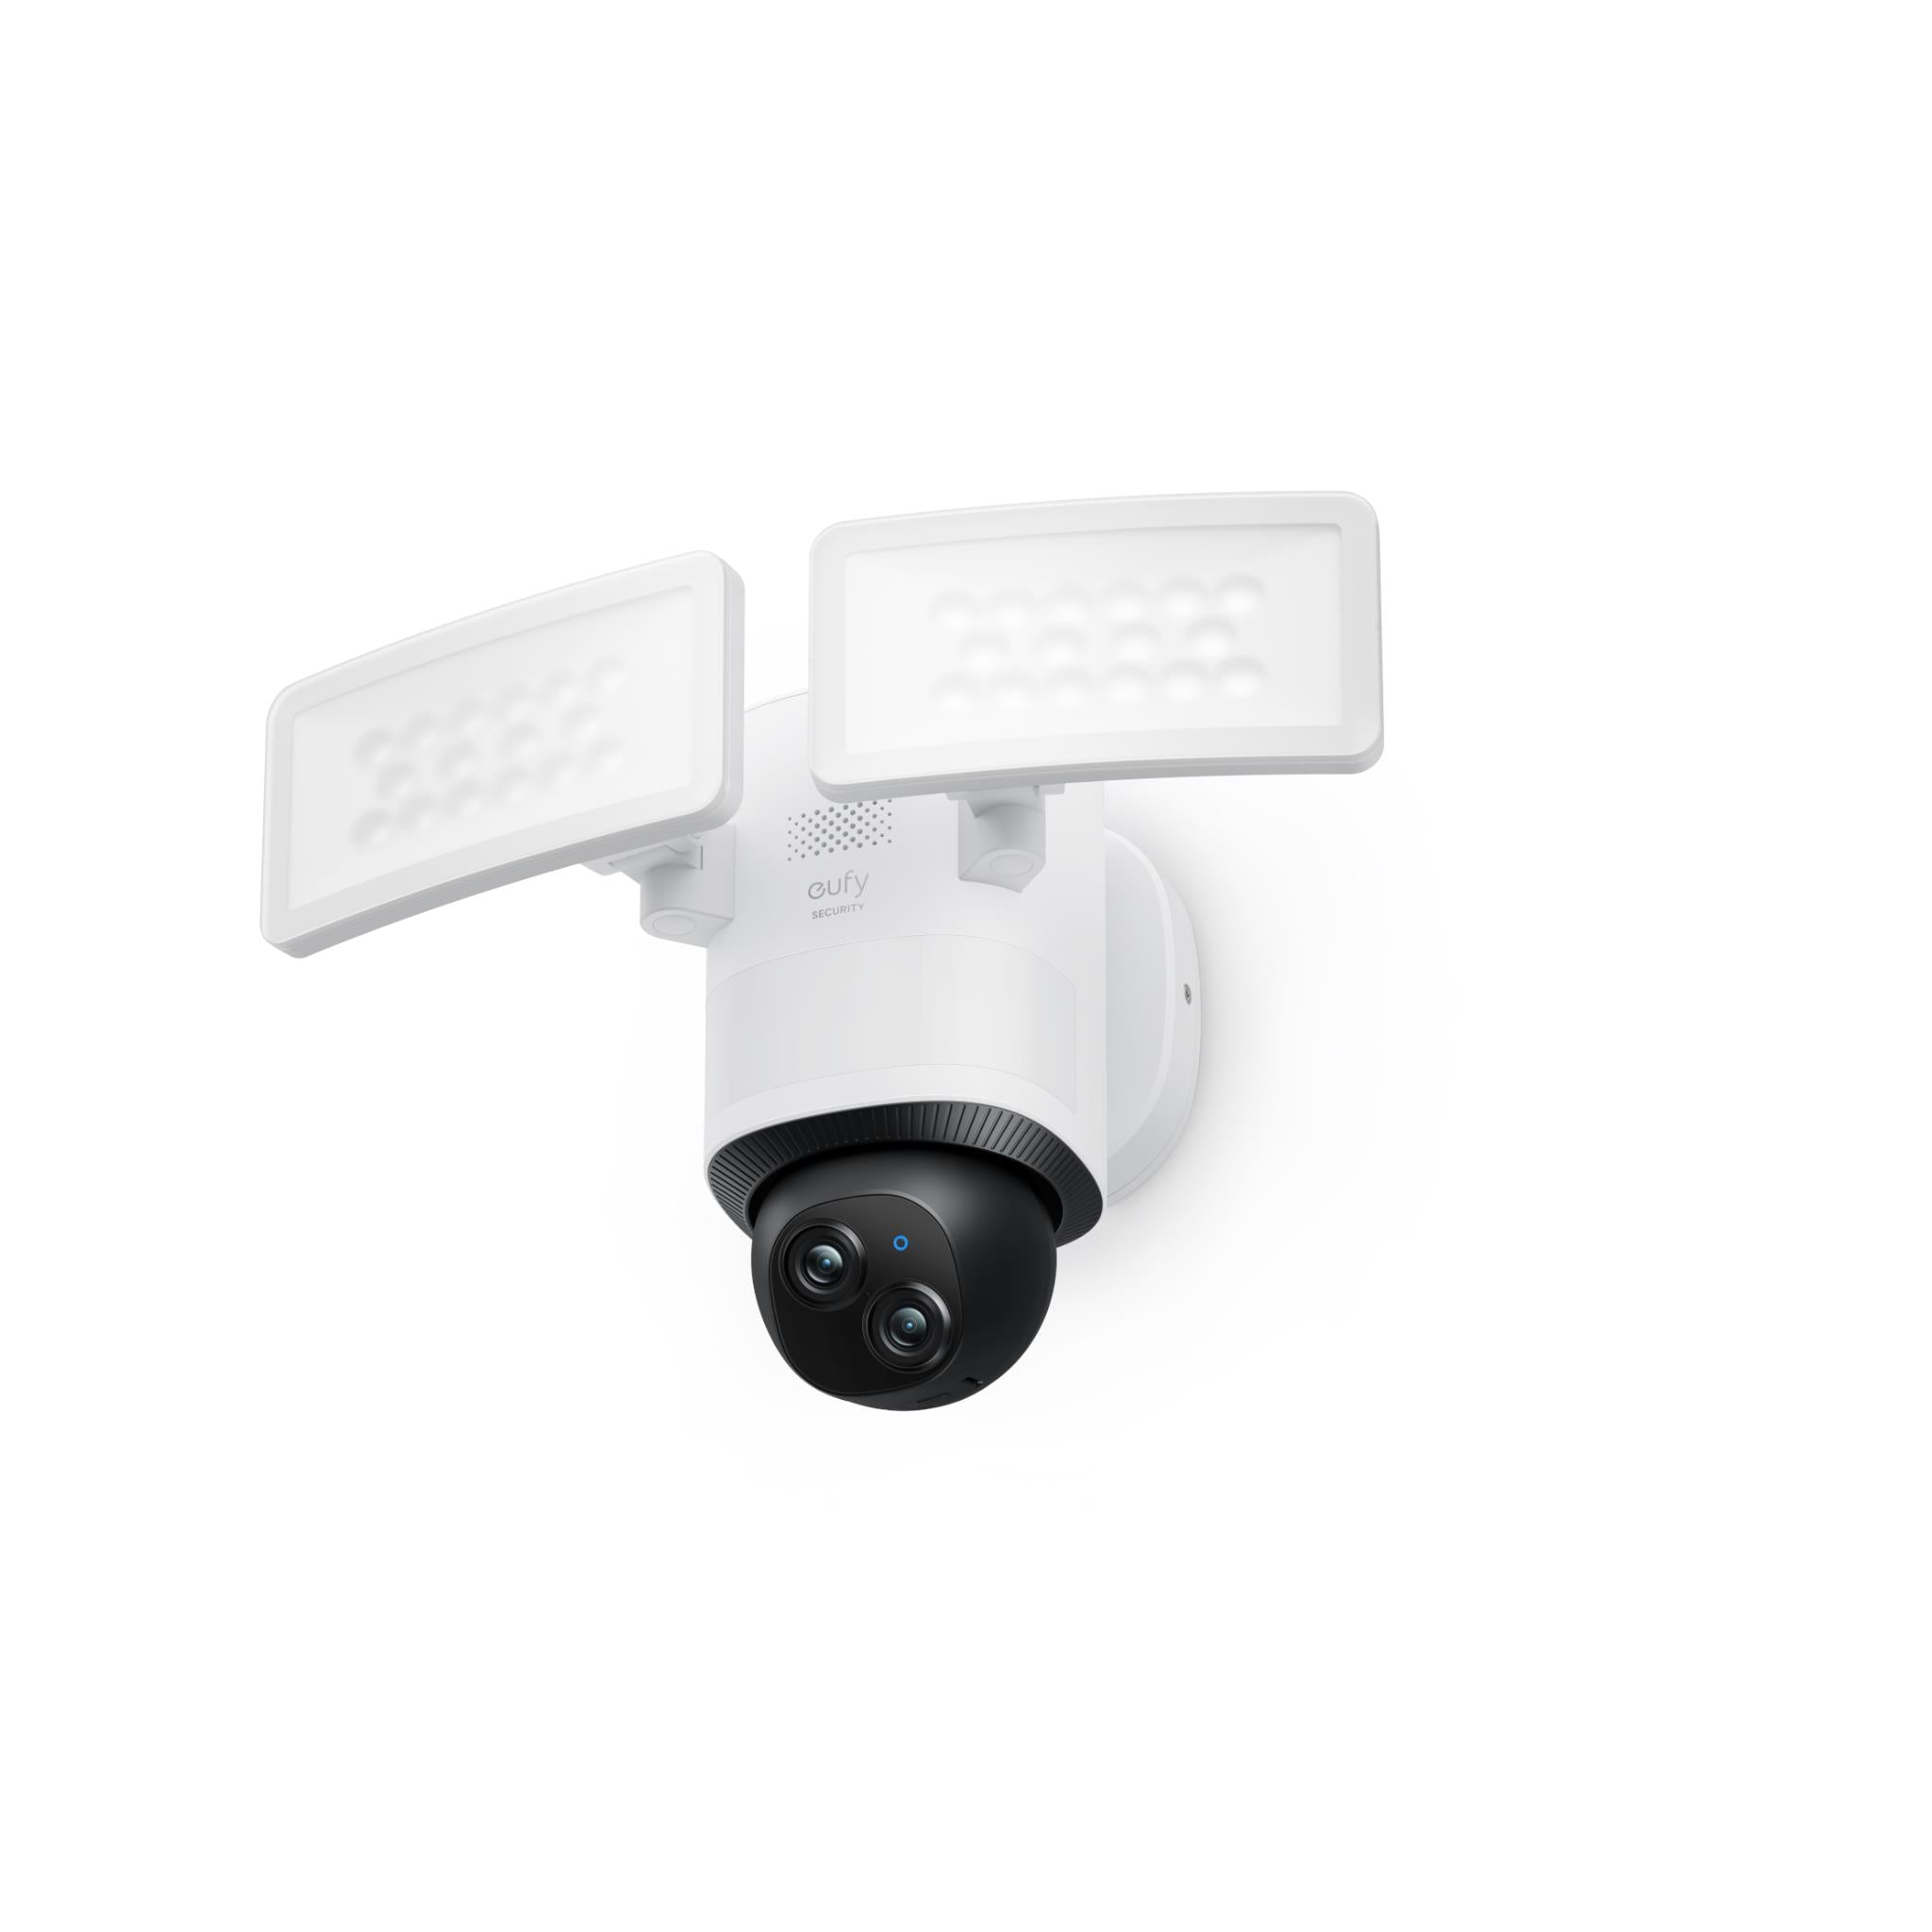 eufy security e340 floodlight camera